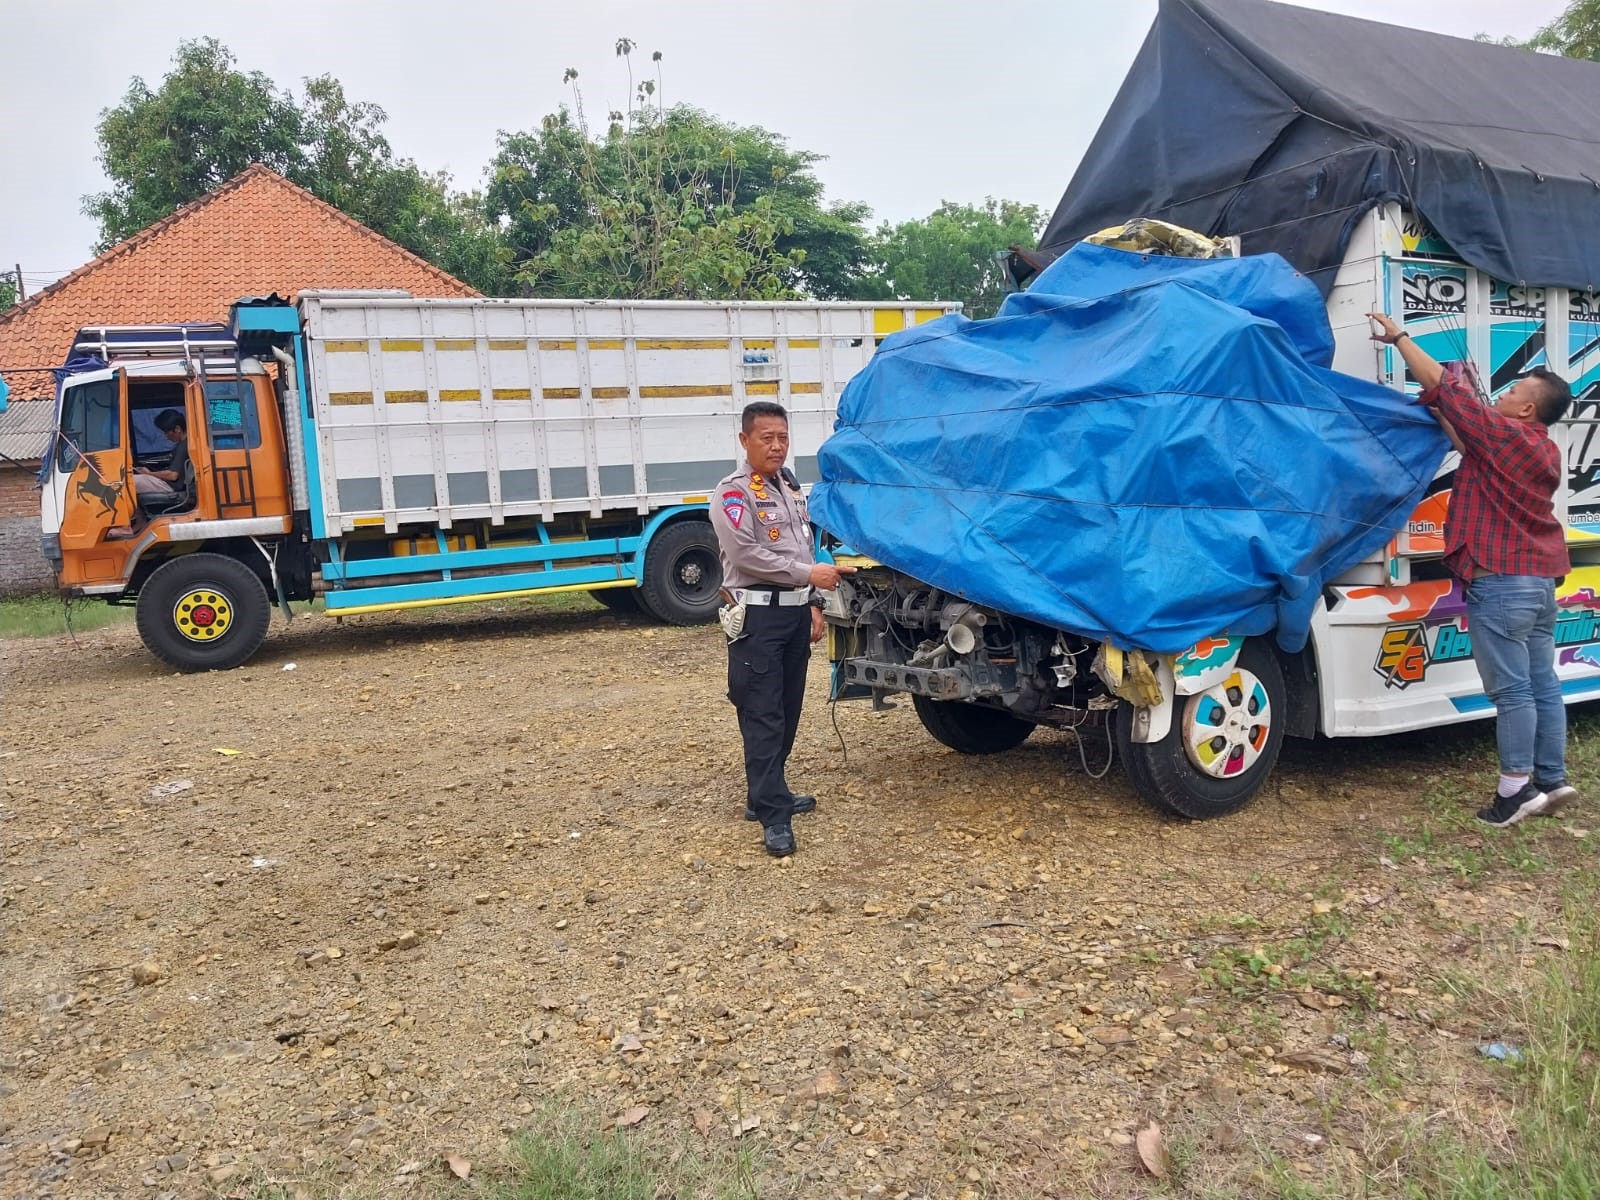 Gara-gara Kecelakaan di Palimanan Cirebon, Sopir Truk Dilarang Berhenti di Pinggir Jalan